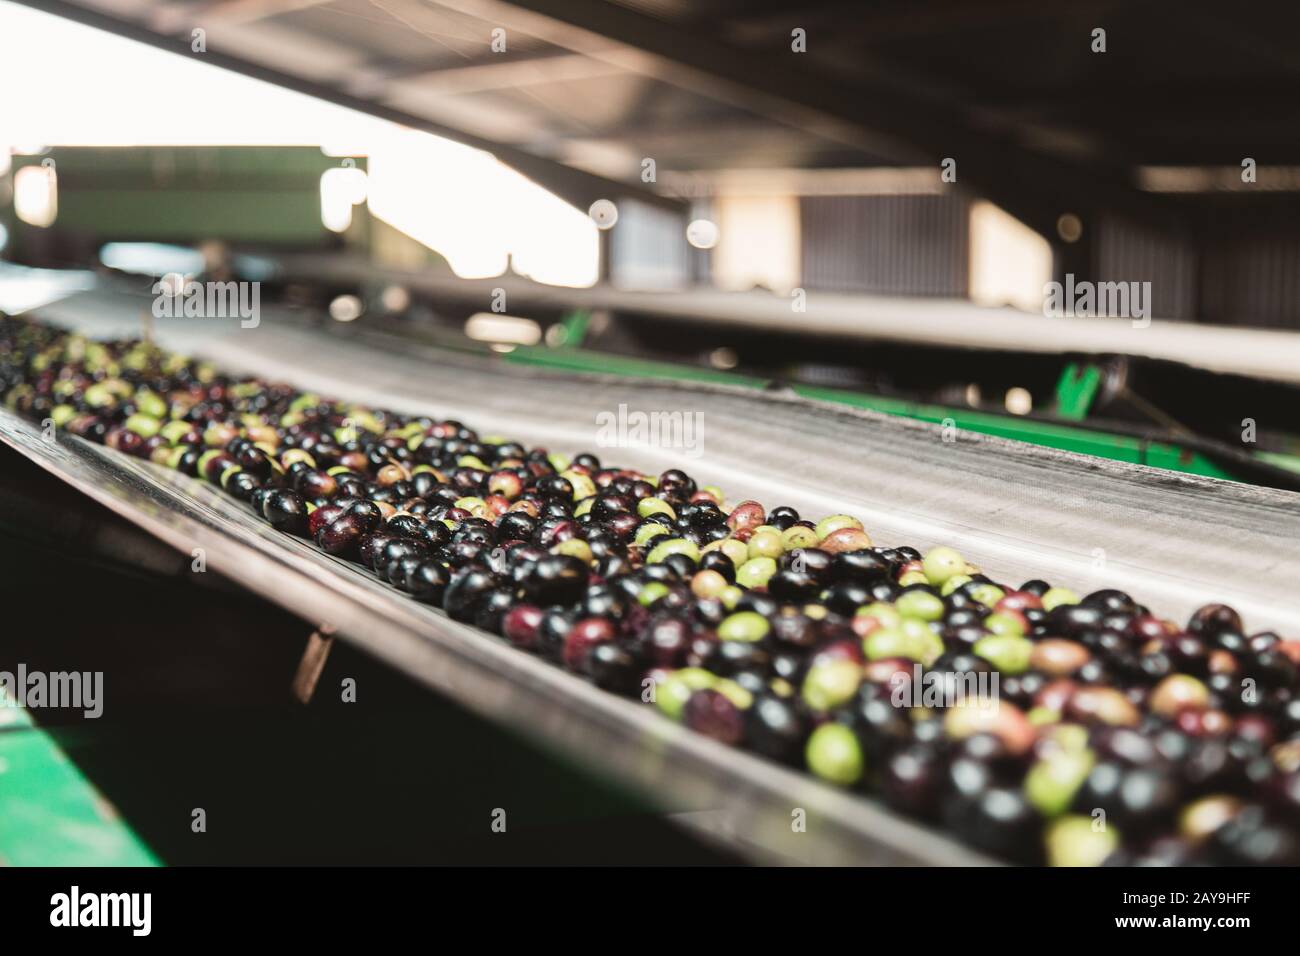 Viele Oliven in verschiedenen Farben auf einem Förderband in der Ölherstellung Stockfoto